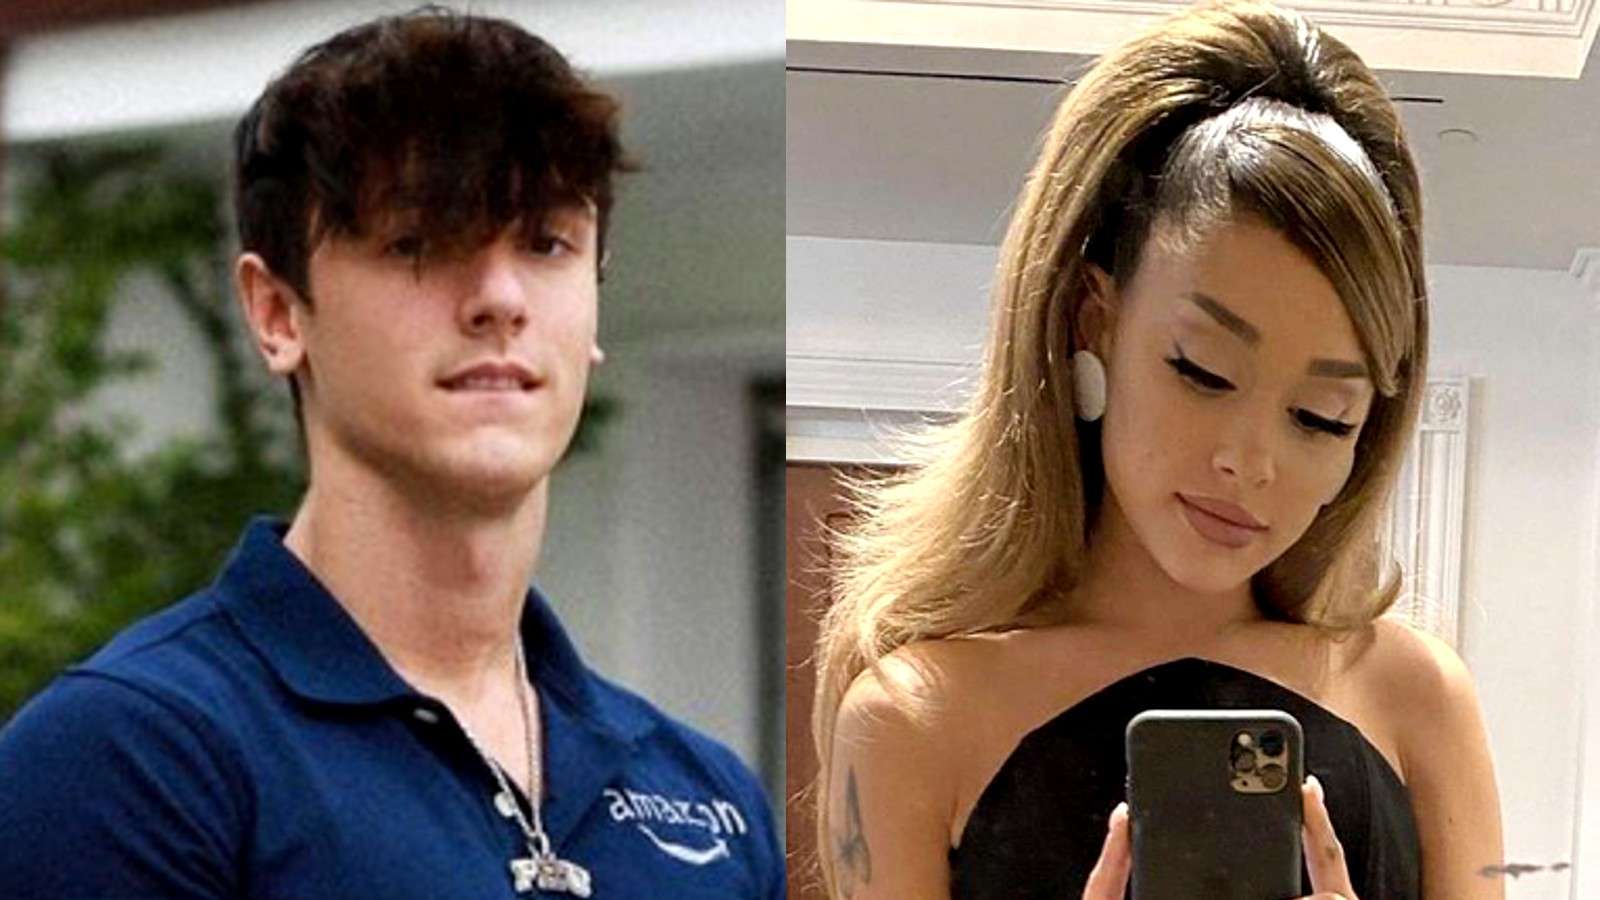 Image of TikTok star Bryce Hall next to image of Ariana Grande